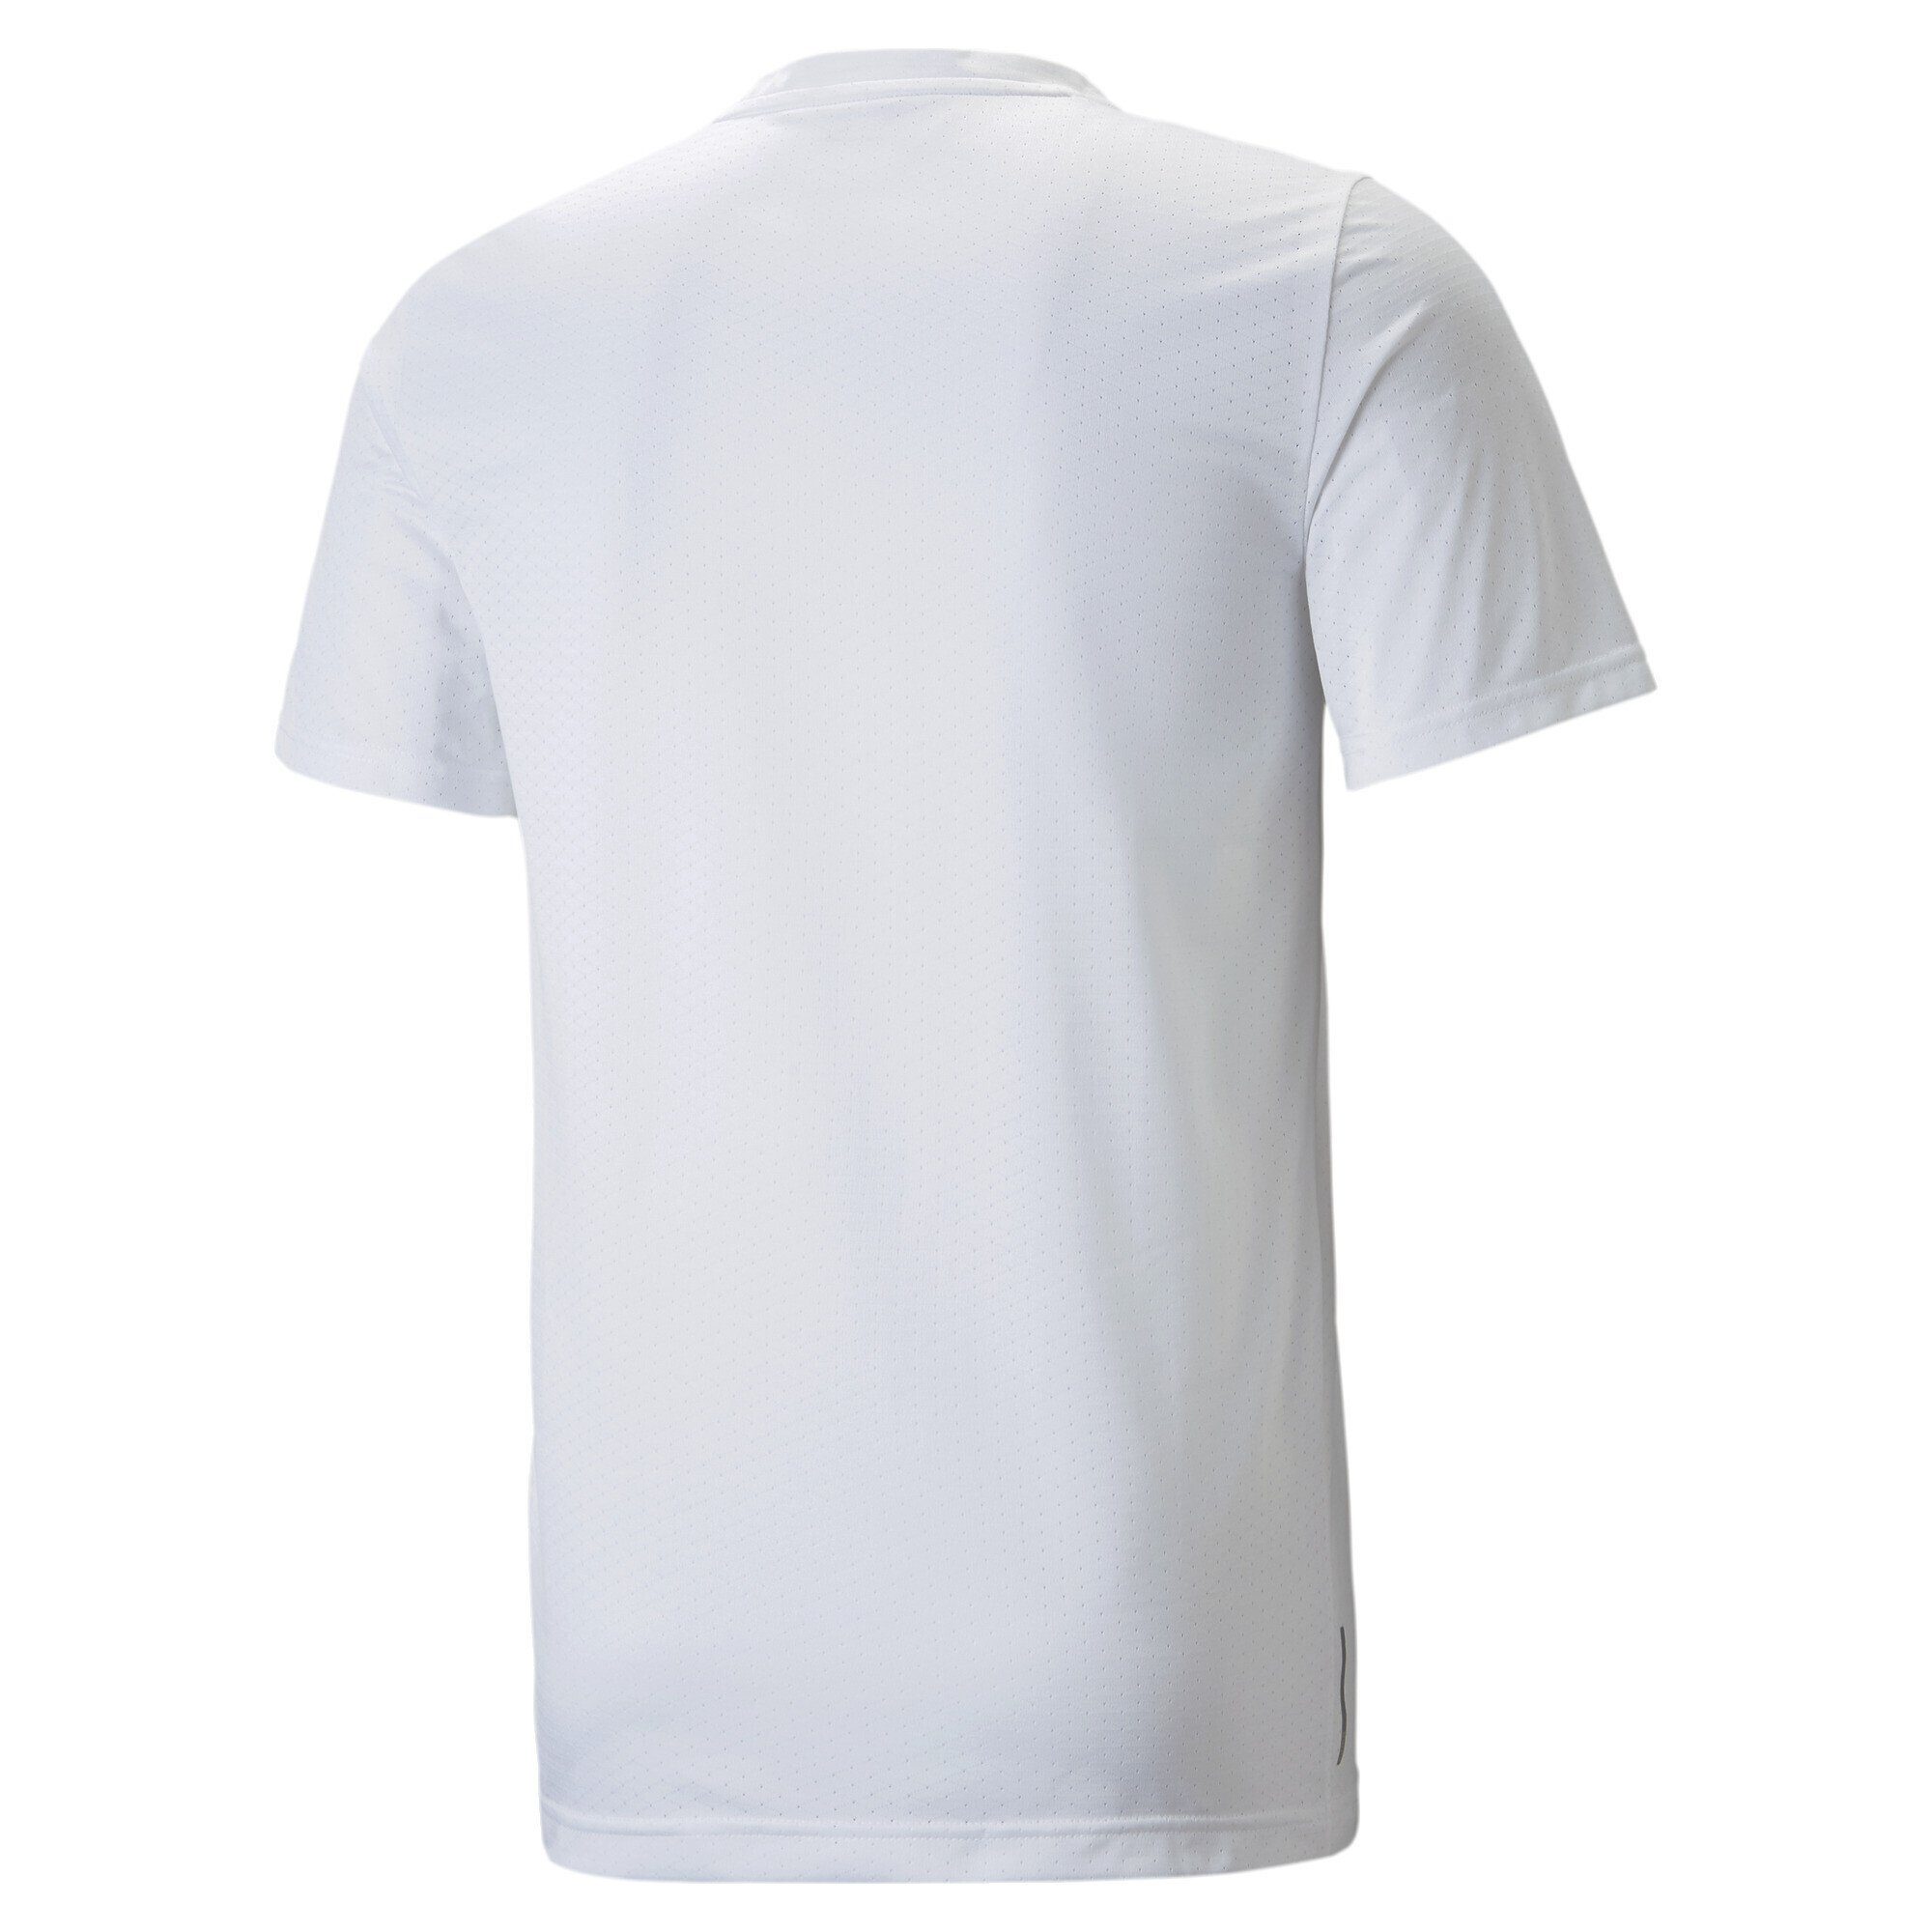 Herren Trainingsshirt Favourite White Blaster PUMA Trainingsshirt